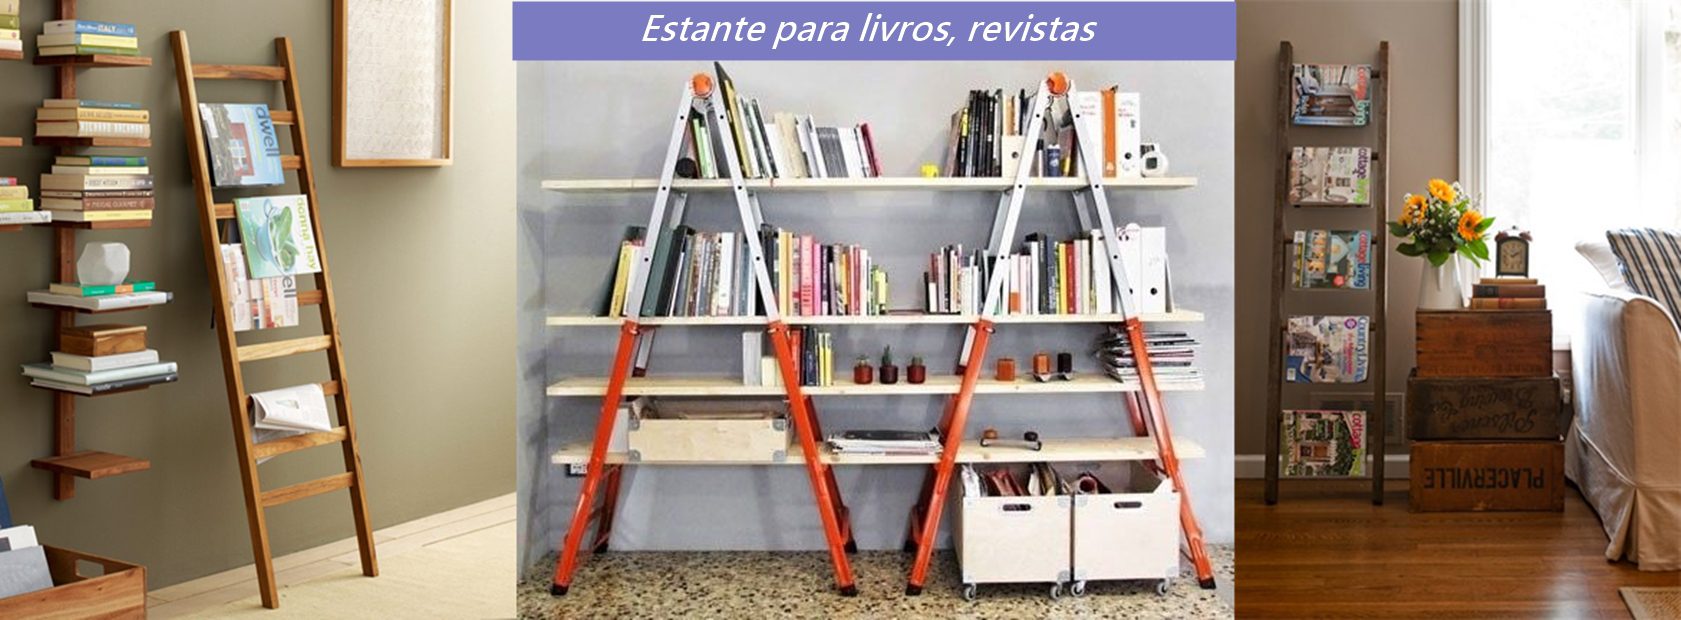 escadas como suporte de livros revistas